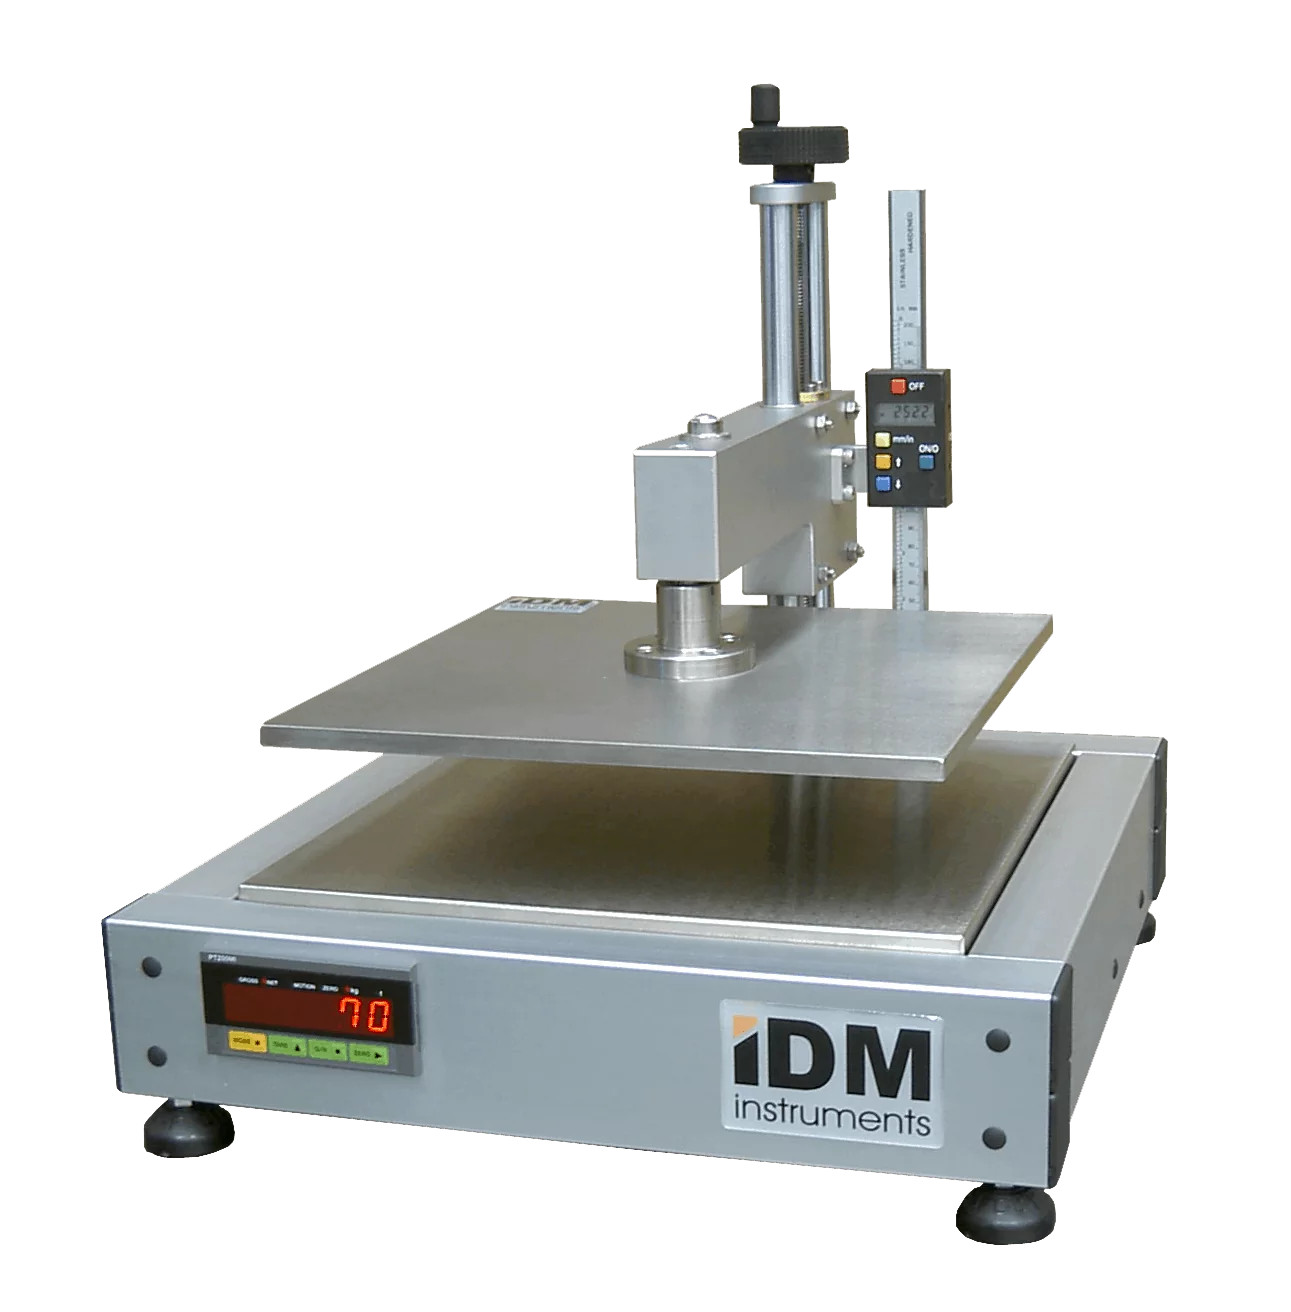 Máy đo độ dày T0022-IDM Instruments tại Việt Nam